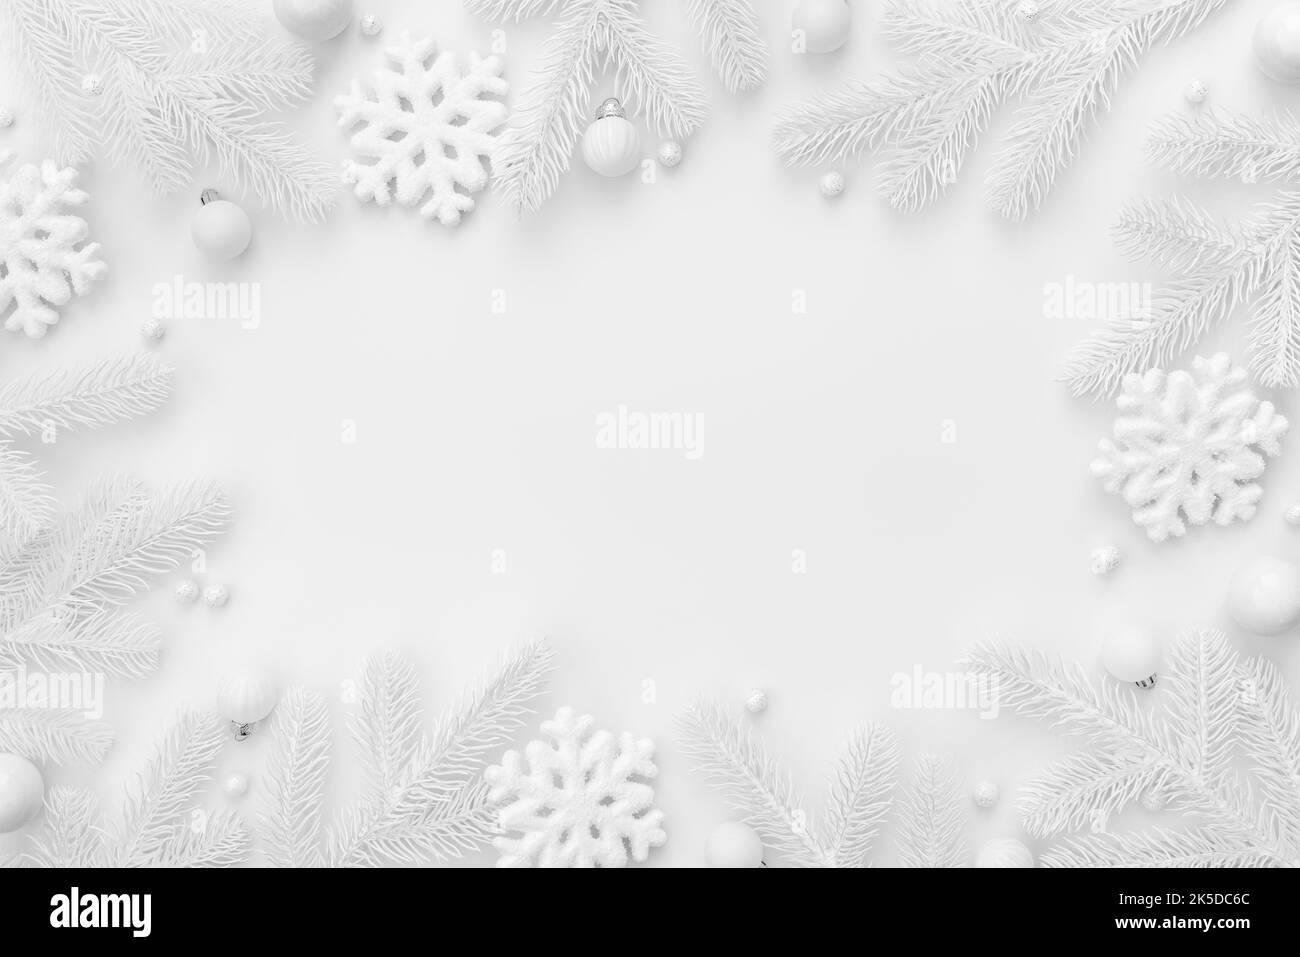 Fond blanc de Noël avec cadre et espace de copie Banque D'Images